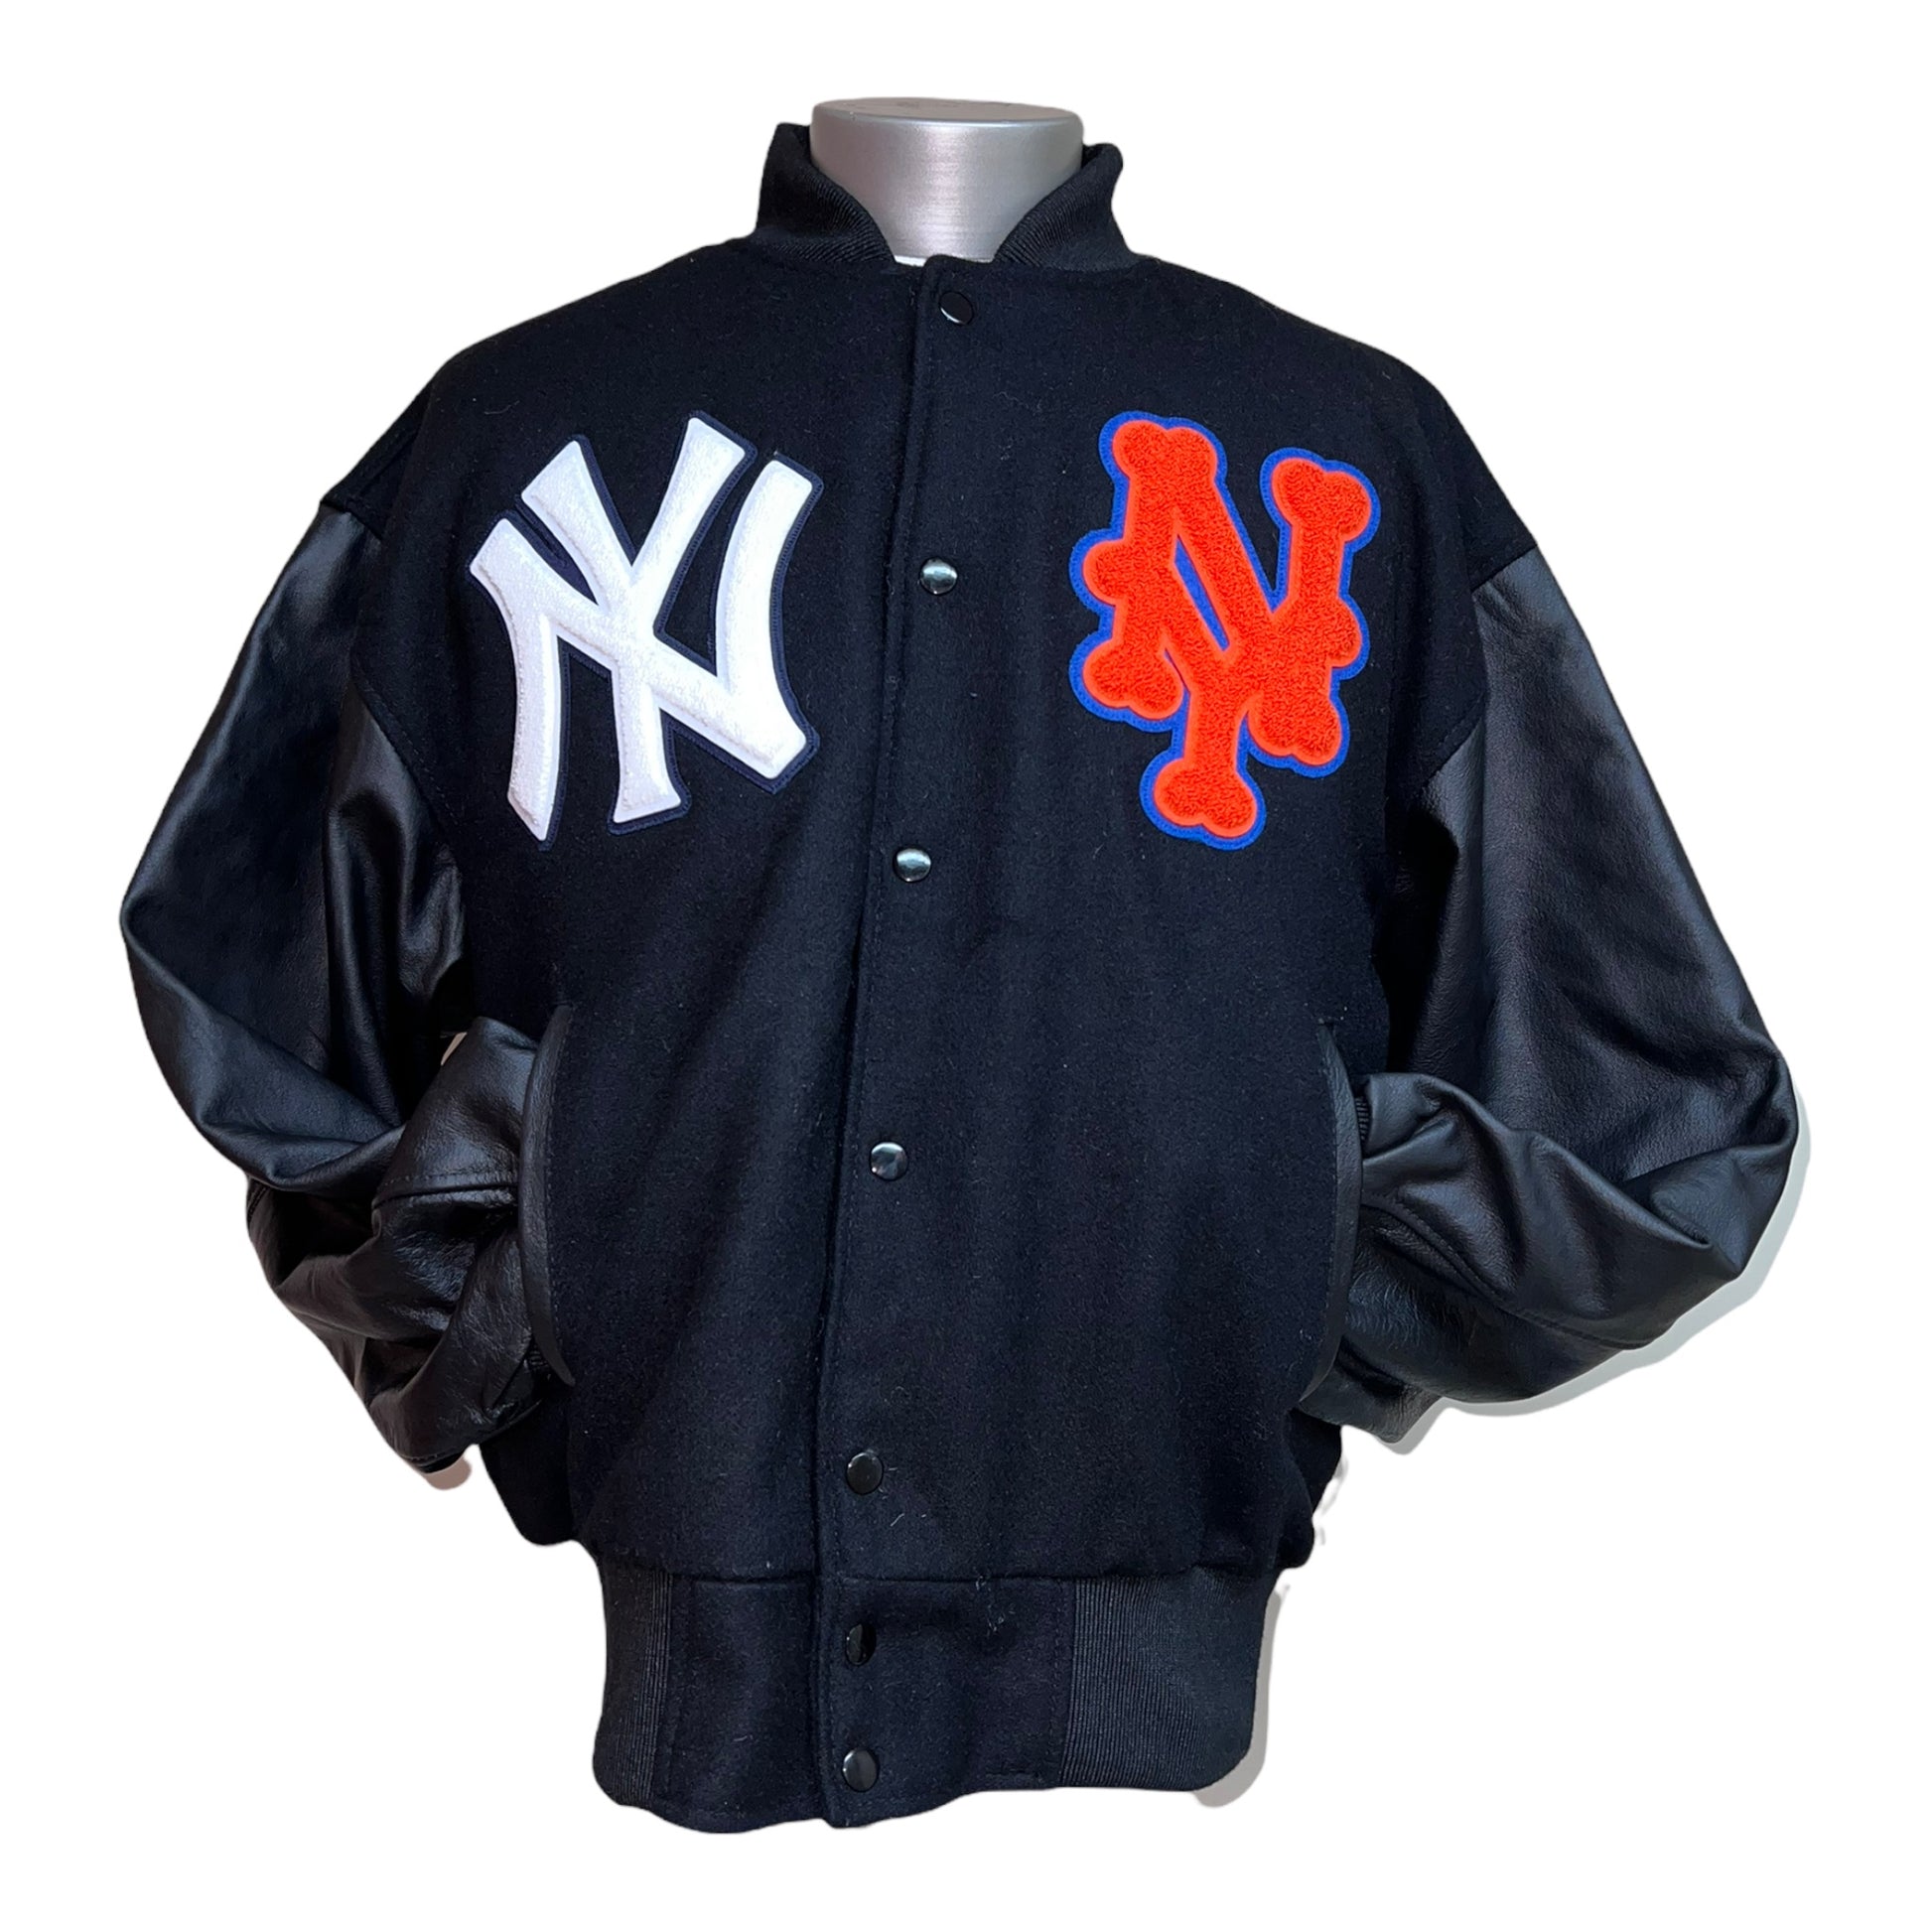 03 N.Y. Yankees Wool And Leather Old School Jacket